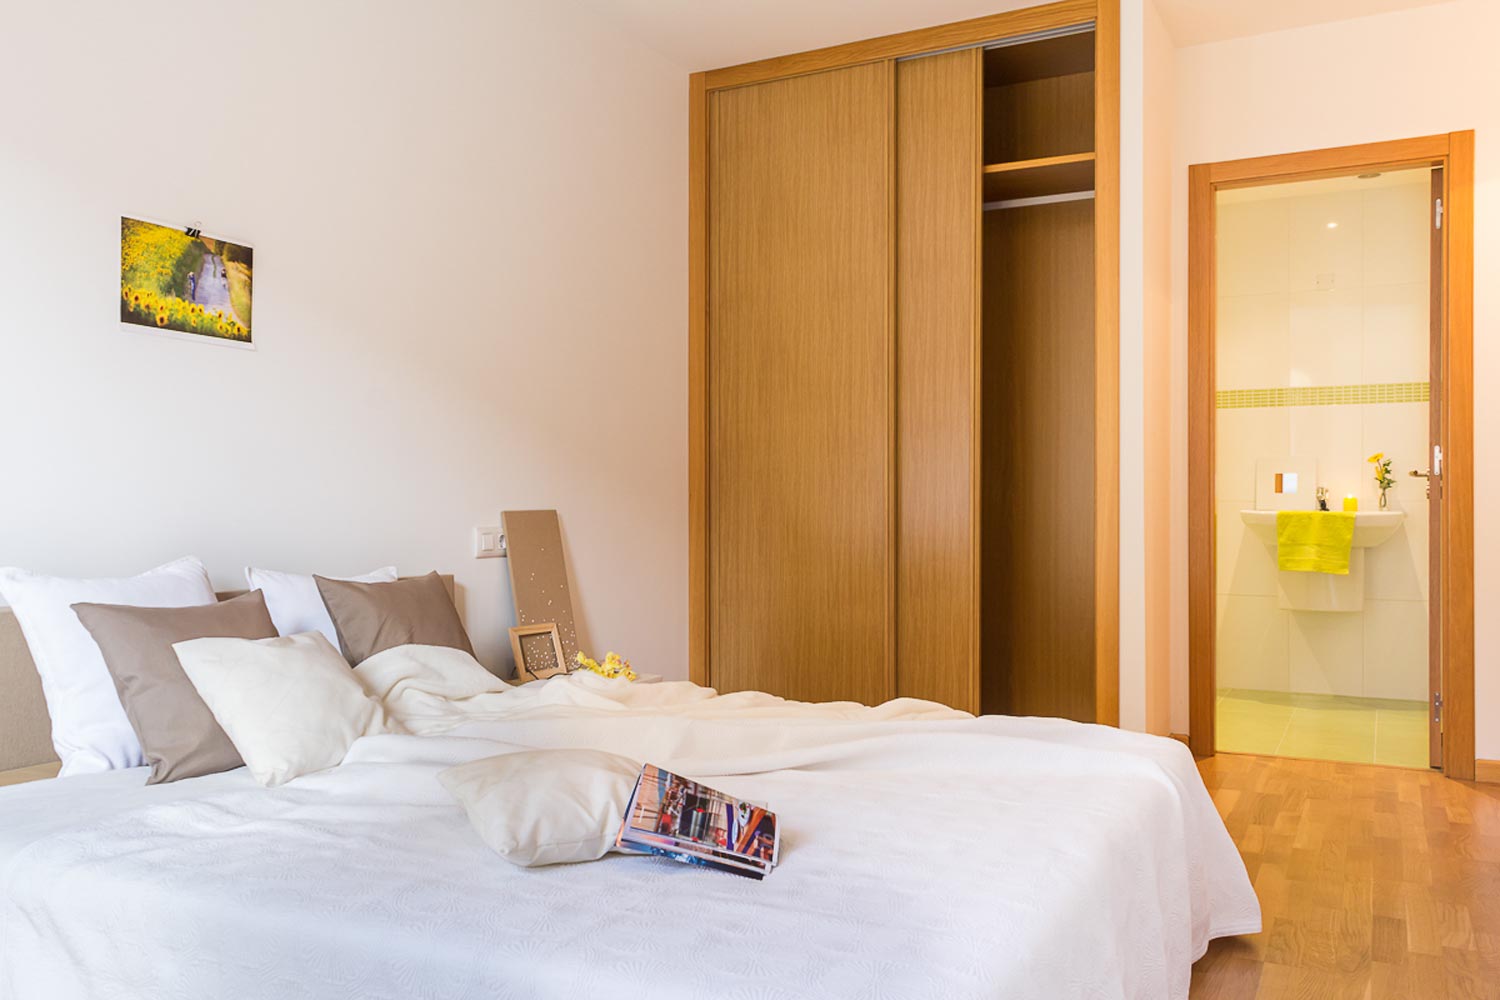 Dormitorio doble con acceso a baño en suite en tonos lima_ Armario empotrado